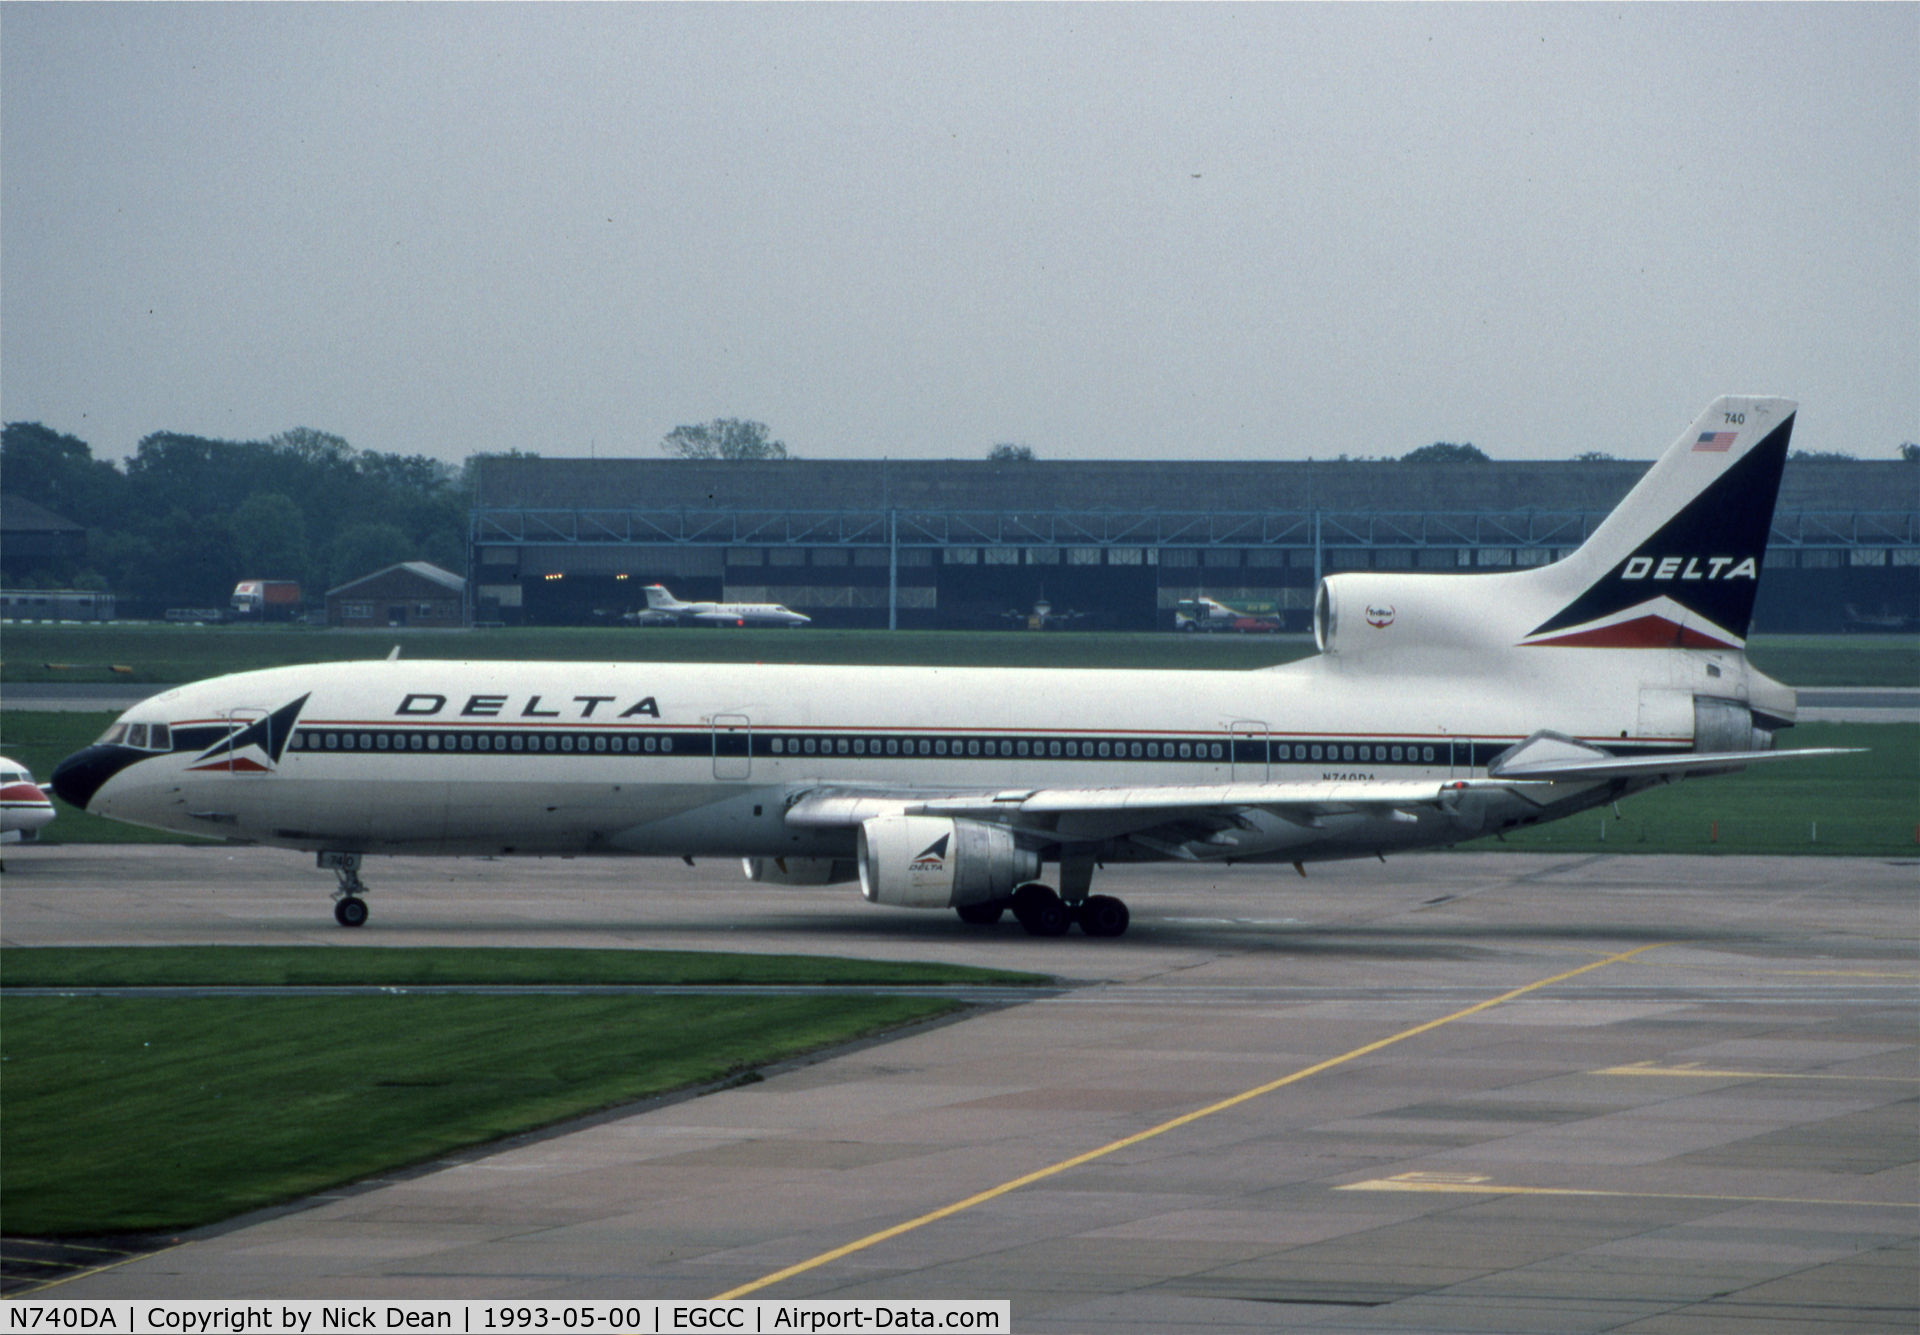 N740DA, 1983 Lockheed L-1011-385-1-15 TriStar 250 C/N 193C-1244, EGCC